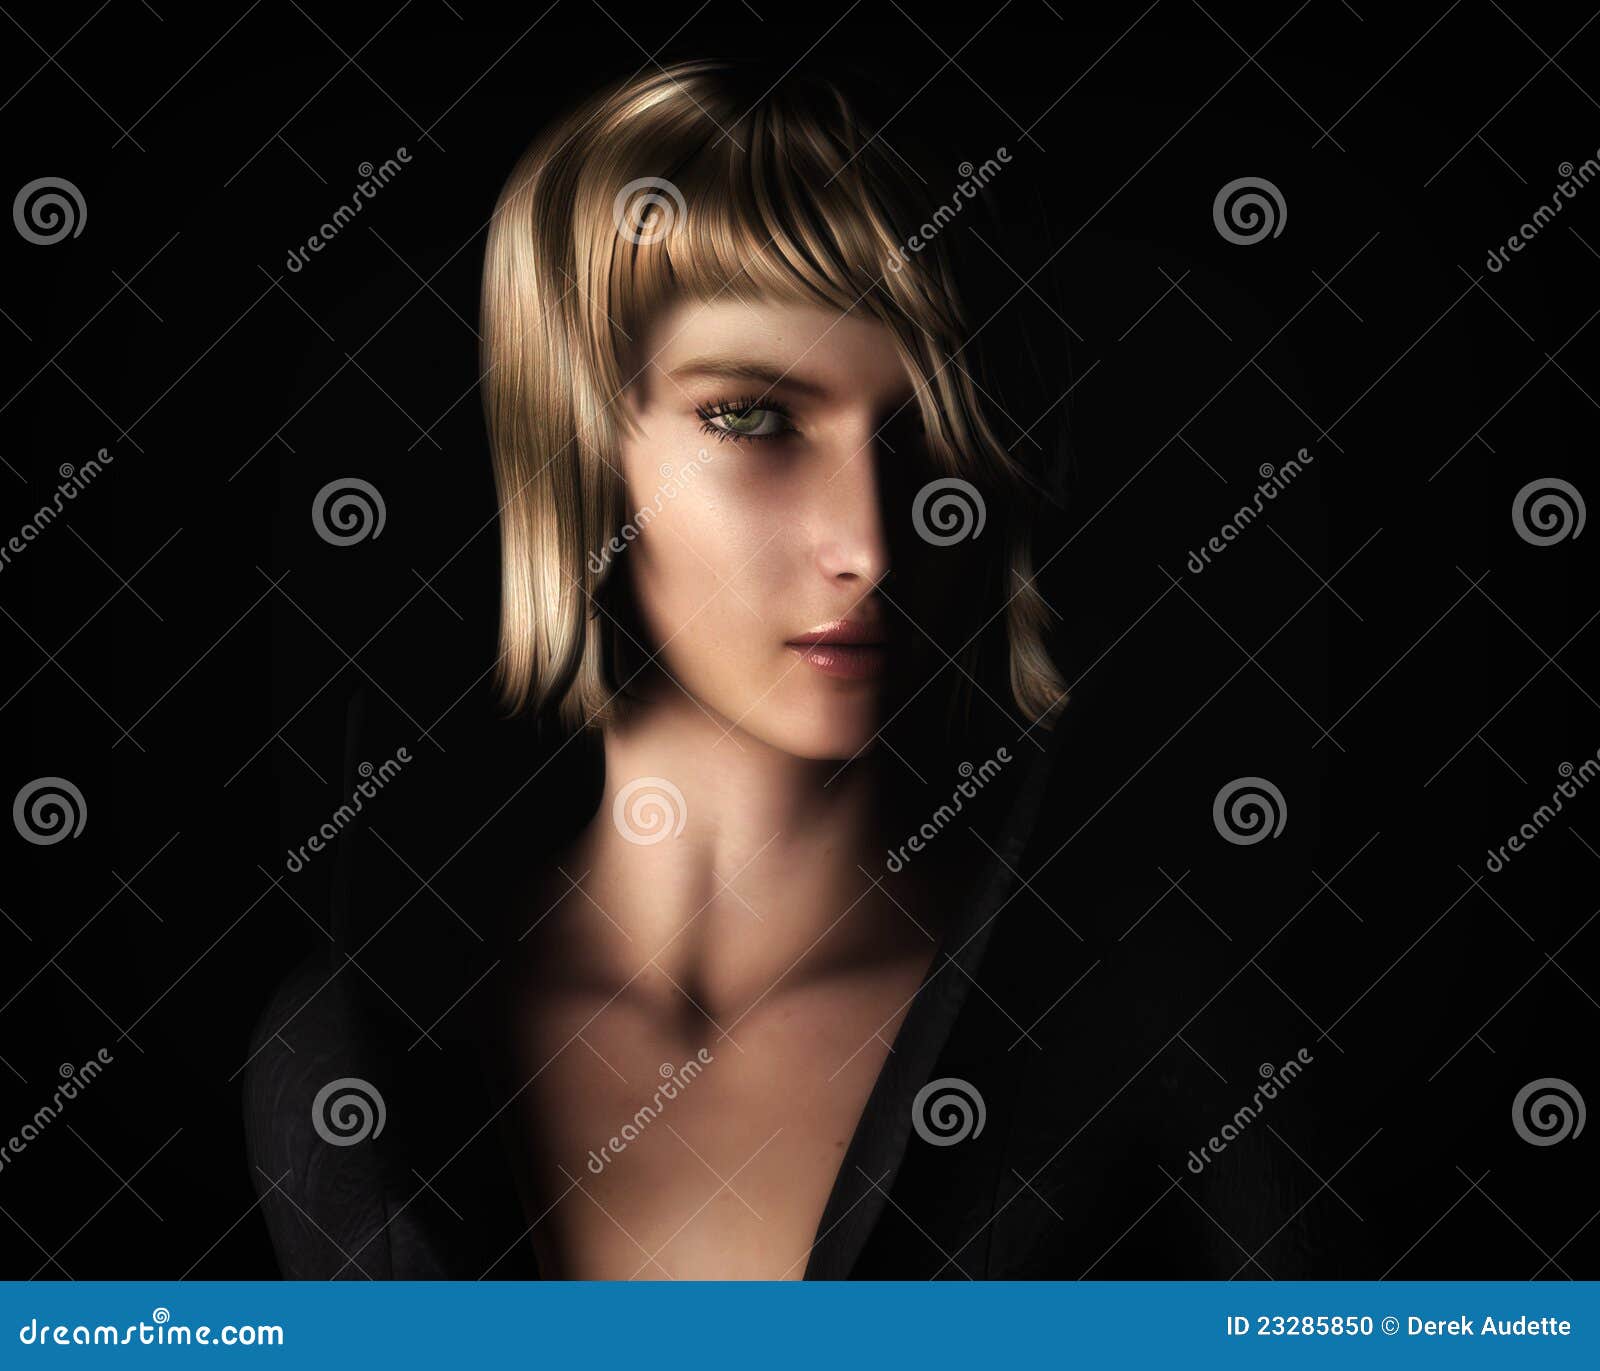 beautiful blonde woman in chiaroscuro style light